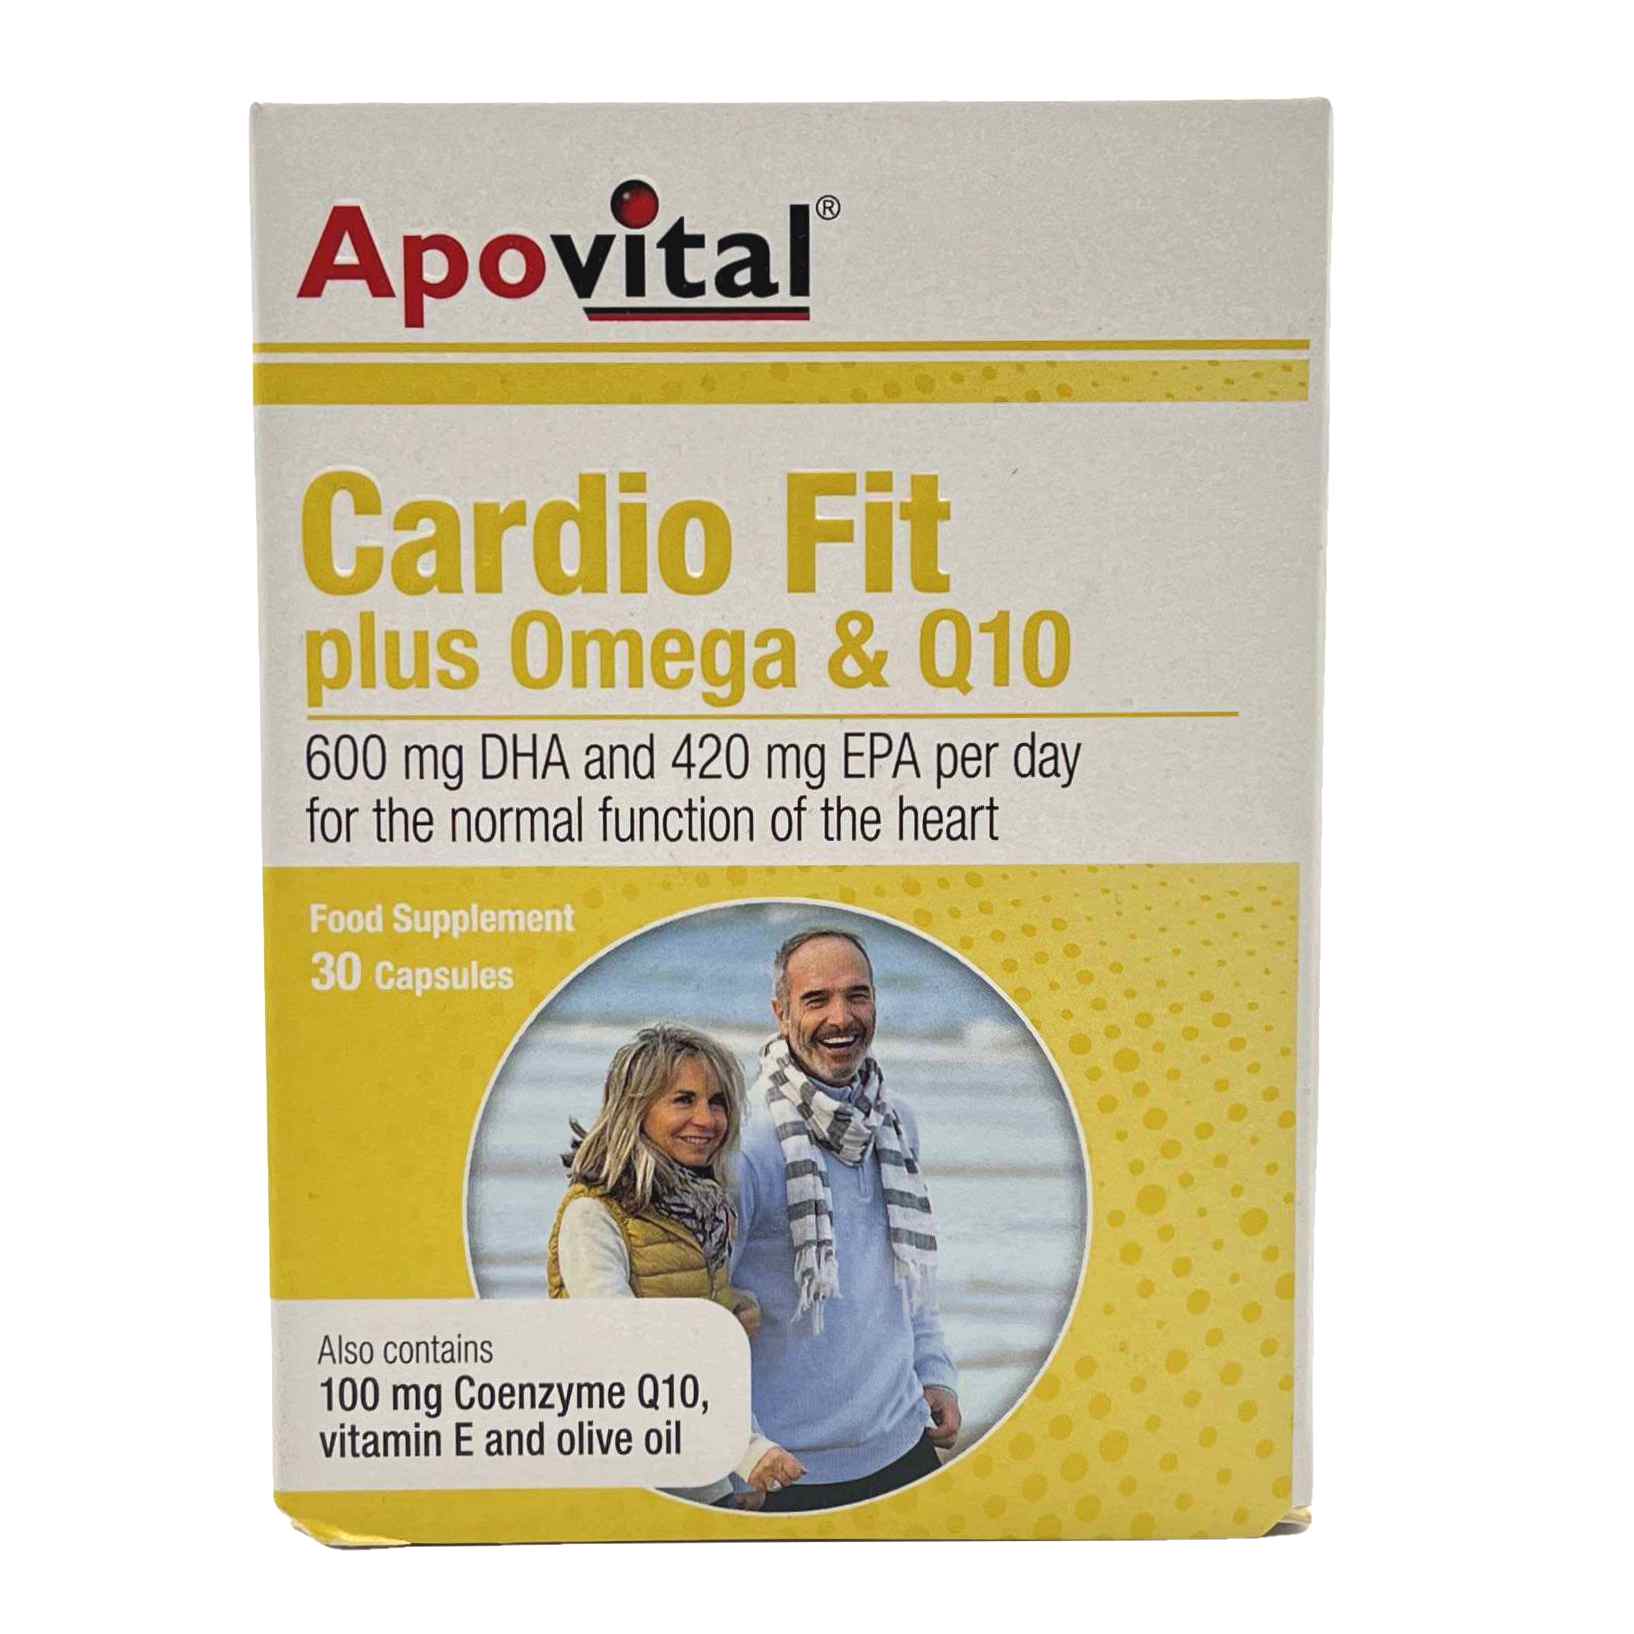 کپسول کاردیوفیت پلاس امگا و کیوتن آپوویتال ApoVital Cardio Fit Plus Omega and Q10